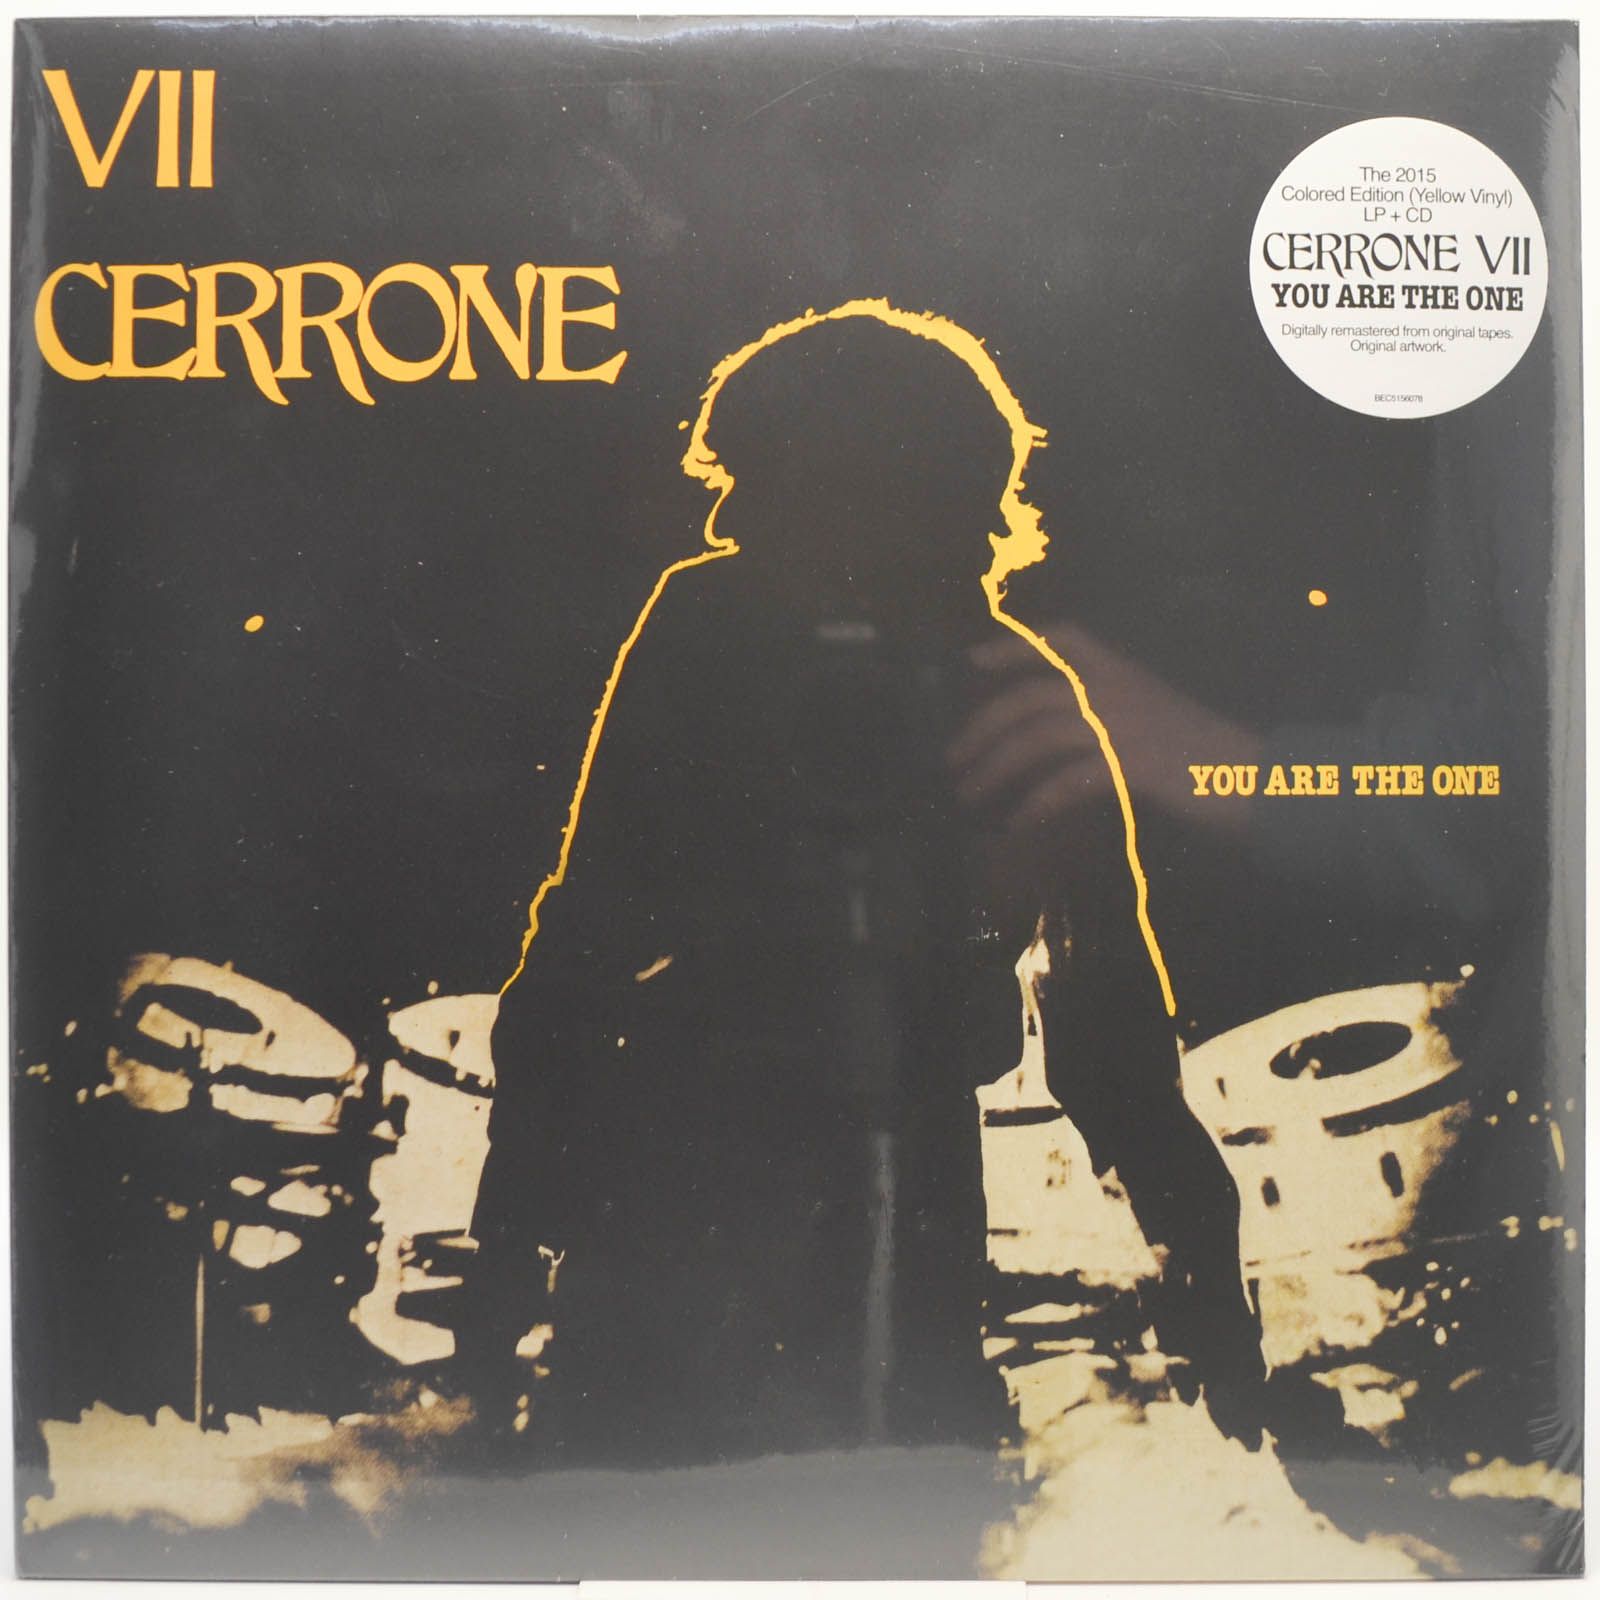 Cerrone — Cerrone VII - You Are The One (LP+CD, France), 1980